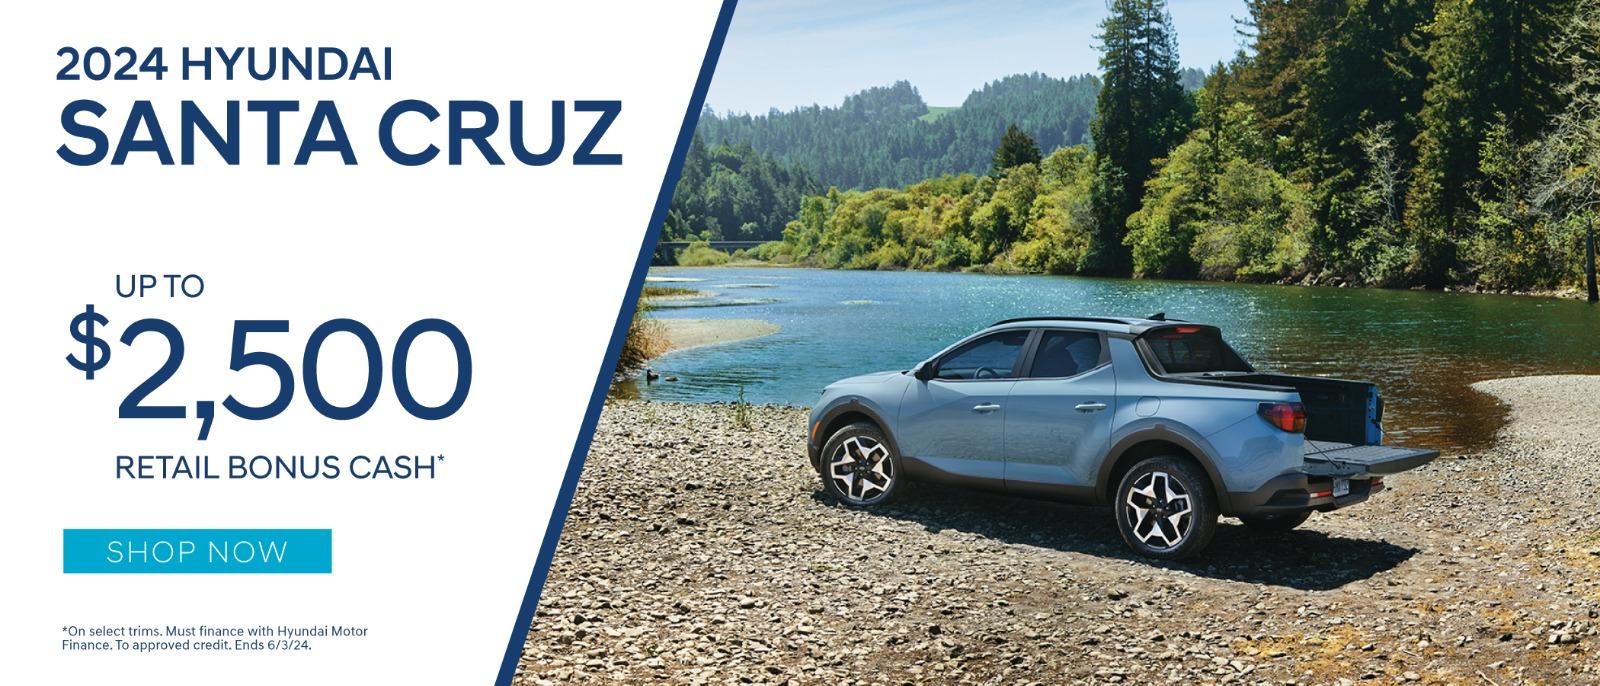 2024 Hyundai Santa Cruz up to $2,500